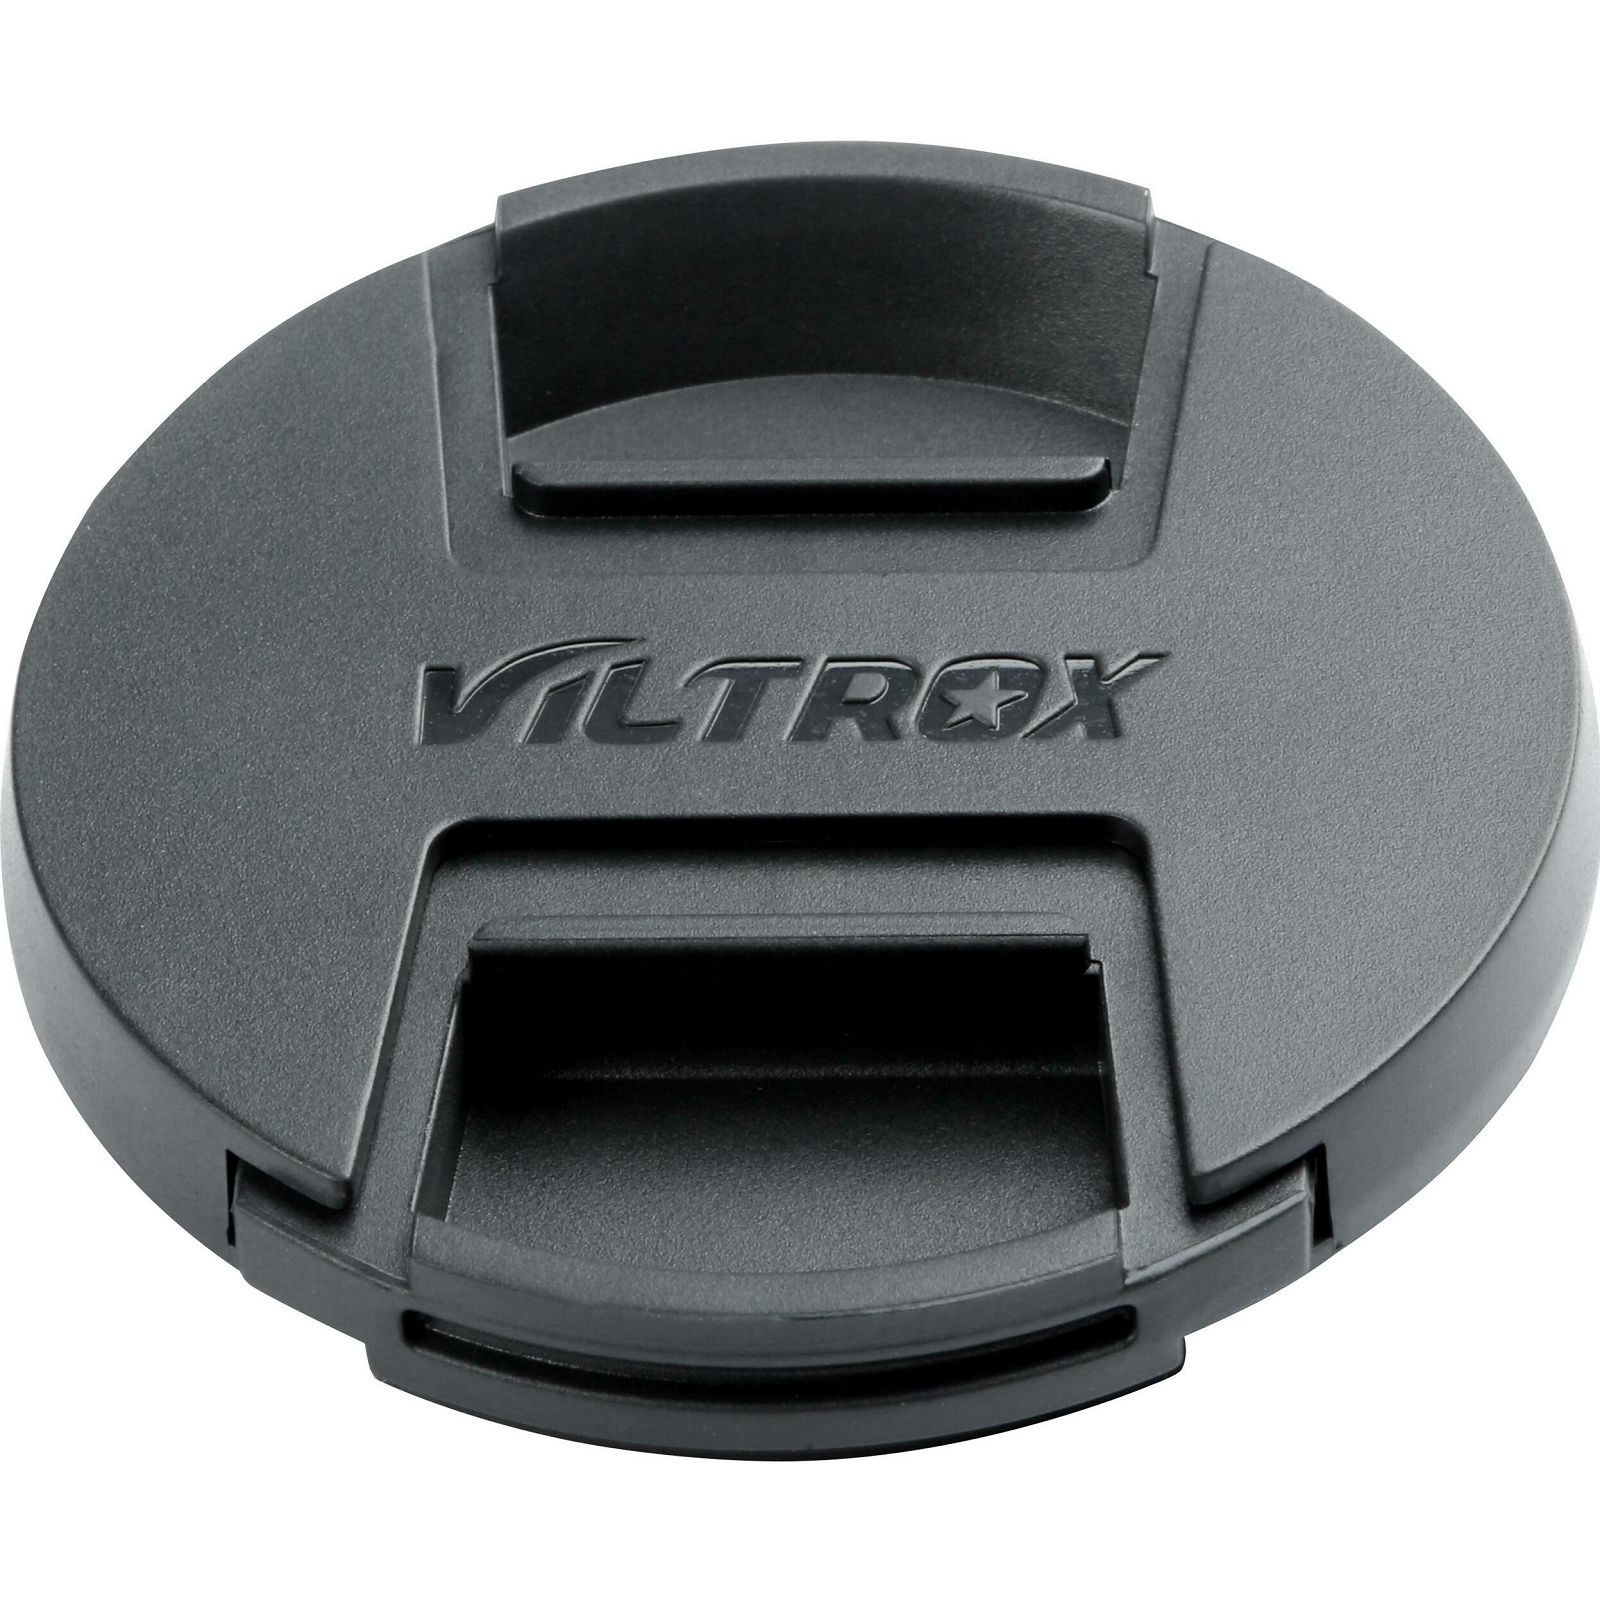 Viltrox AF 50mm f/1.8 Z objektiv za Nikon Z-mount